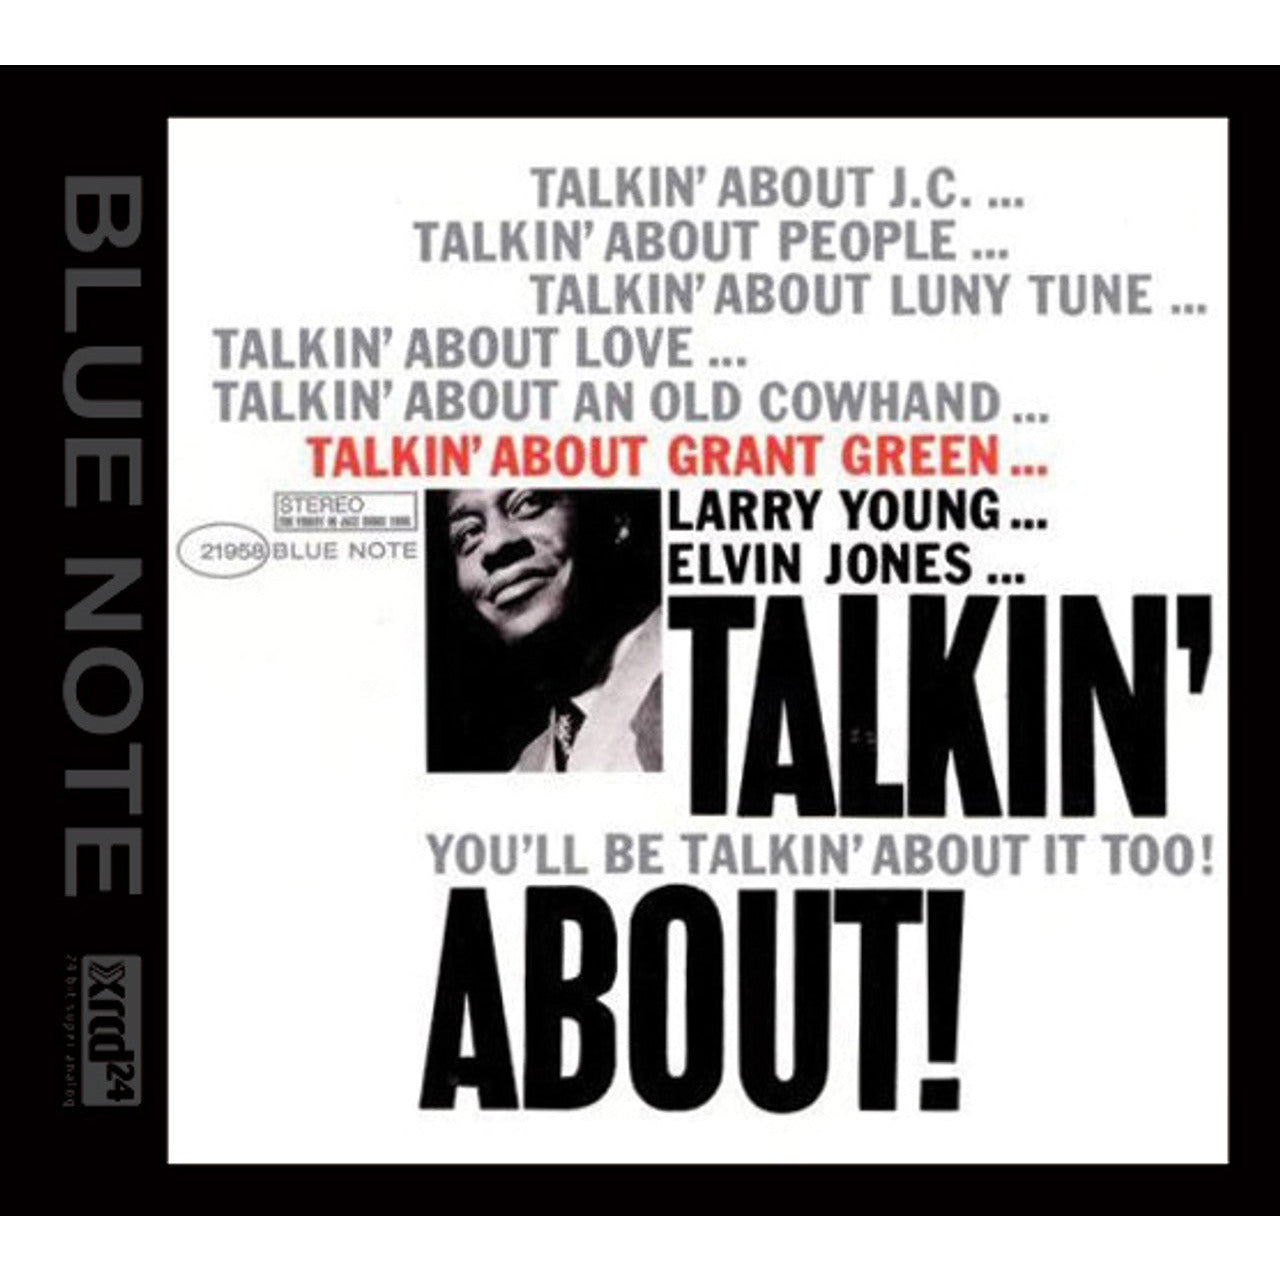 Grant Green - Talkin' About! - XRCD24 CD